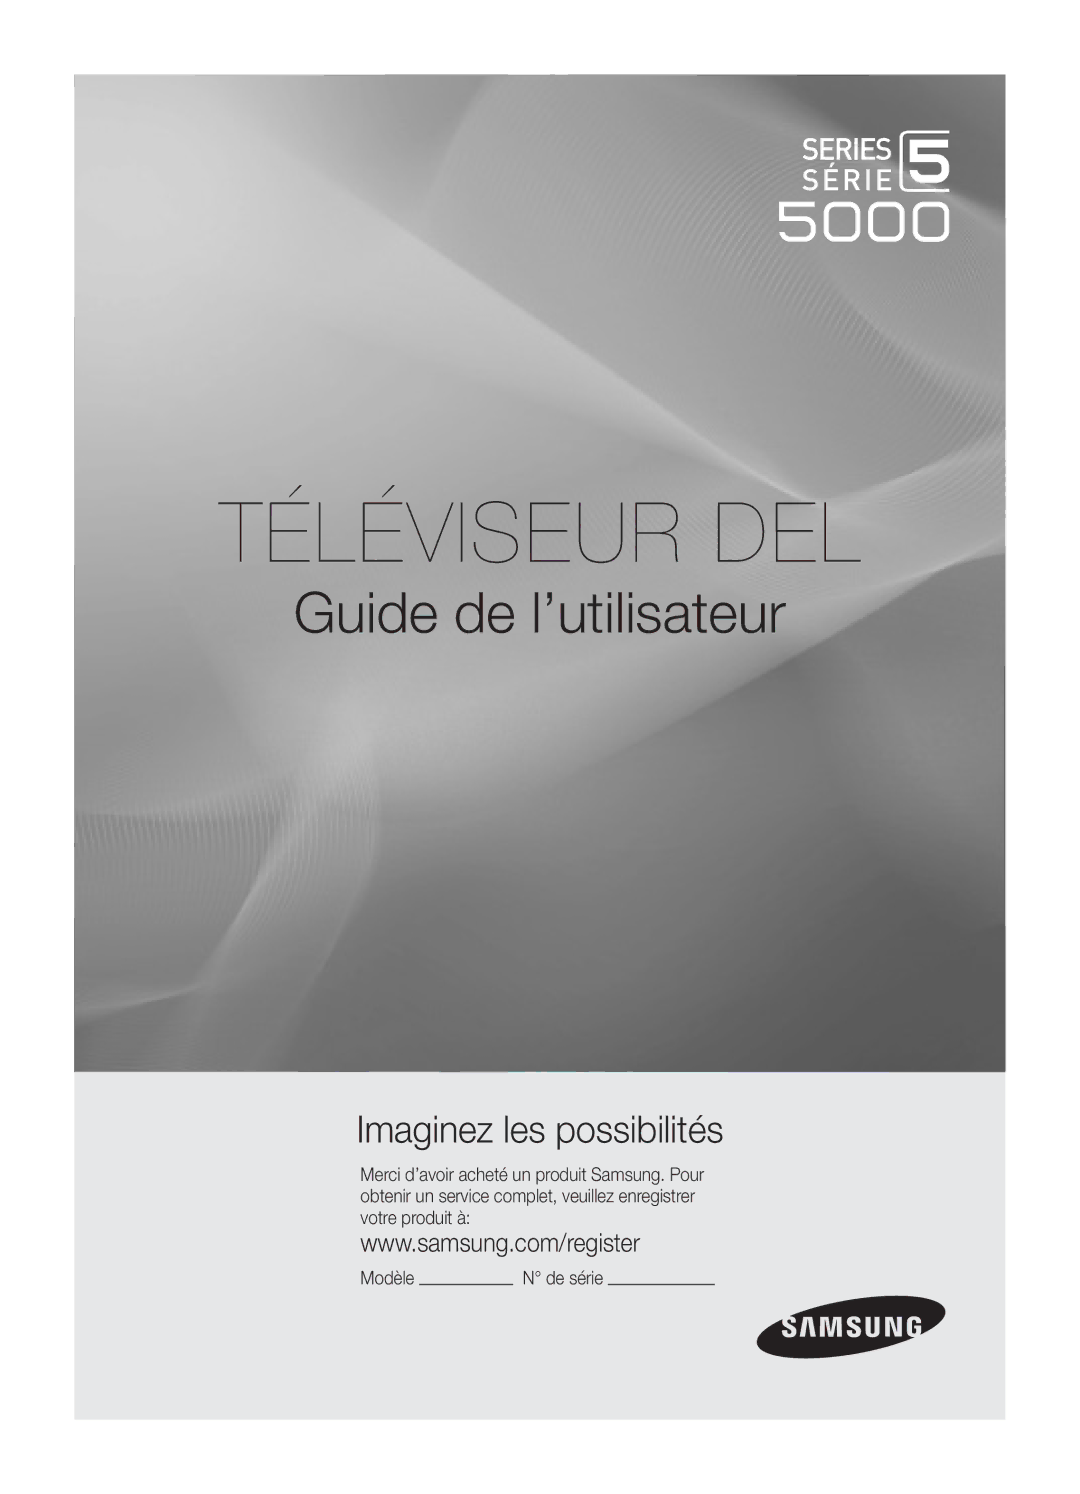 Samsung UN40C5000, BN68-02625B-02, Series C5 user manual Téléviseur DEL, Modèle De série 